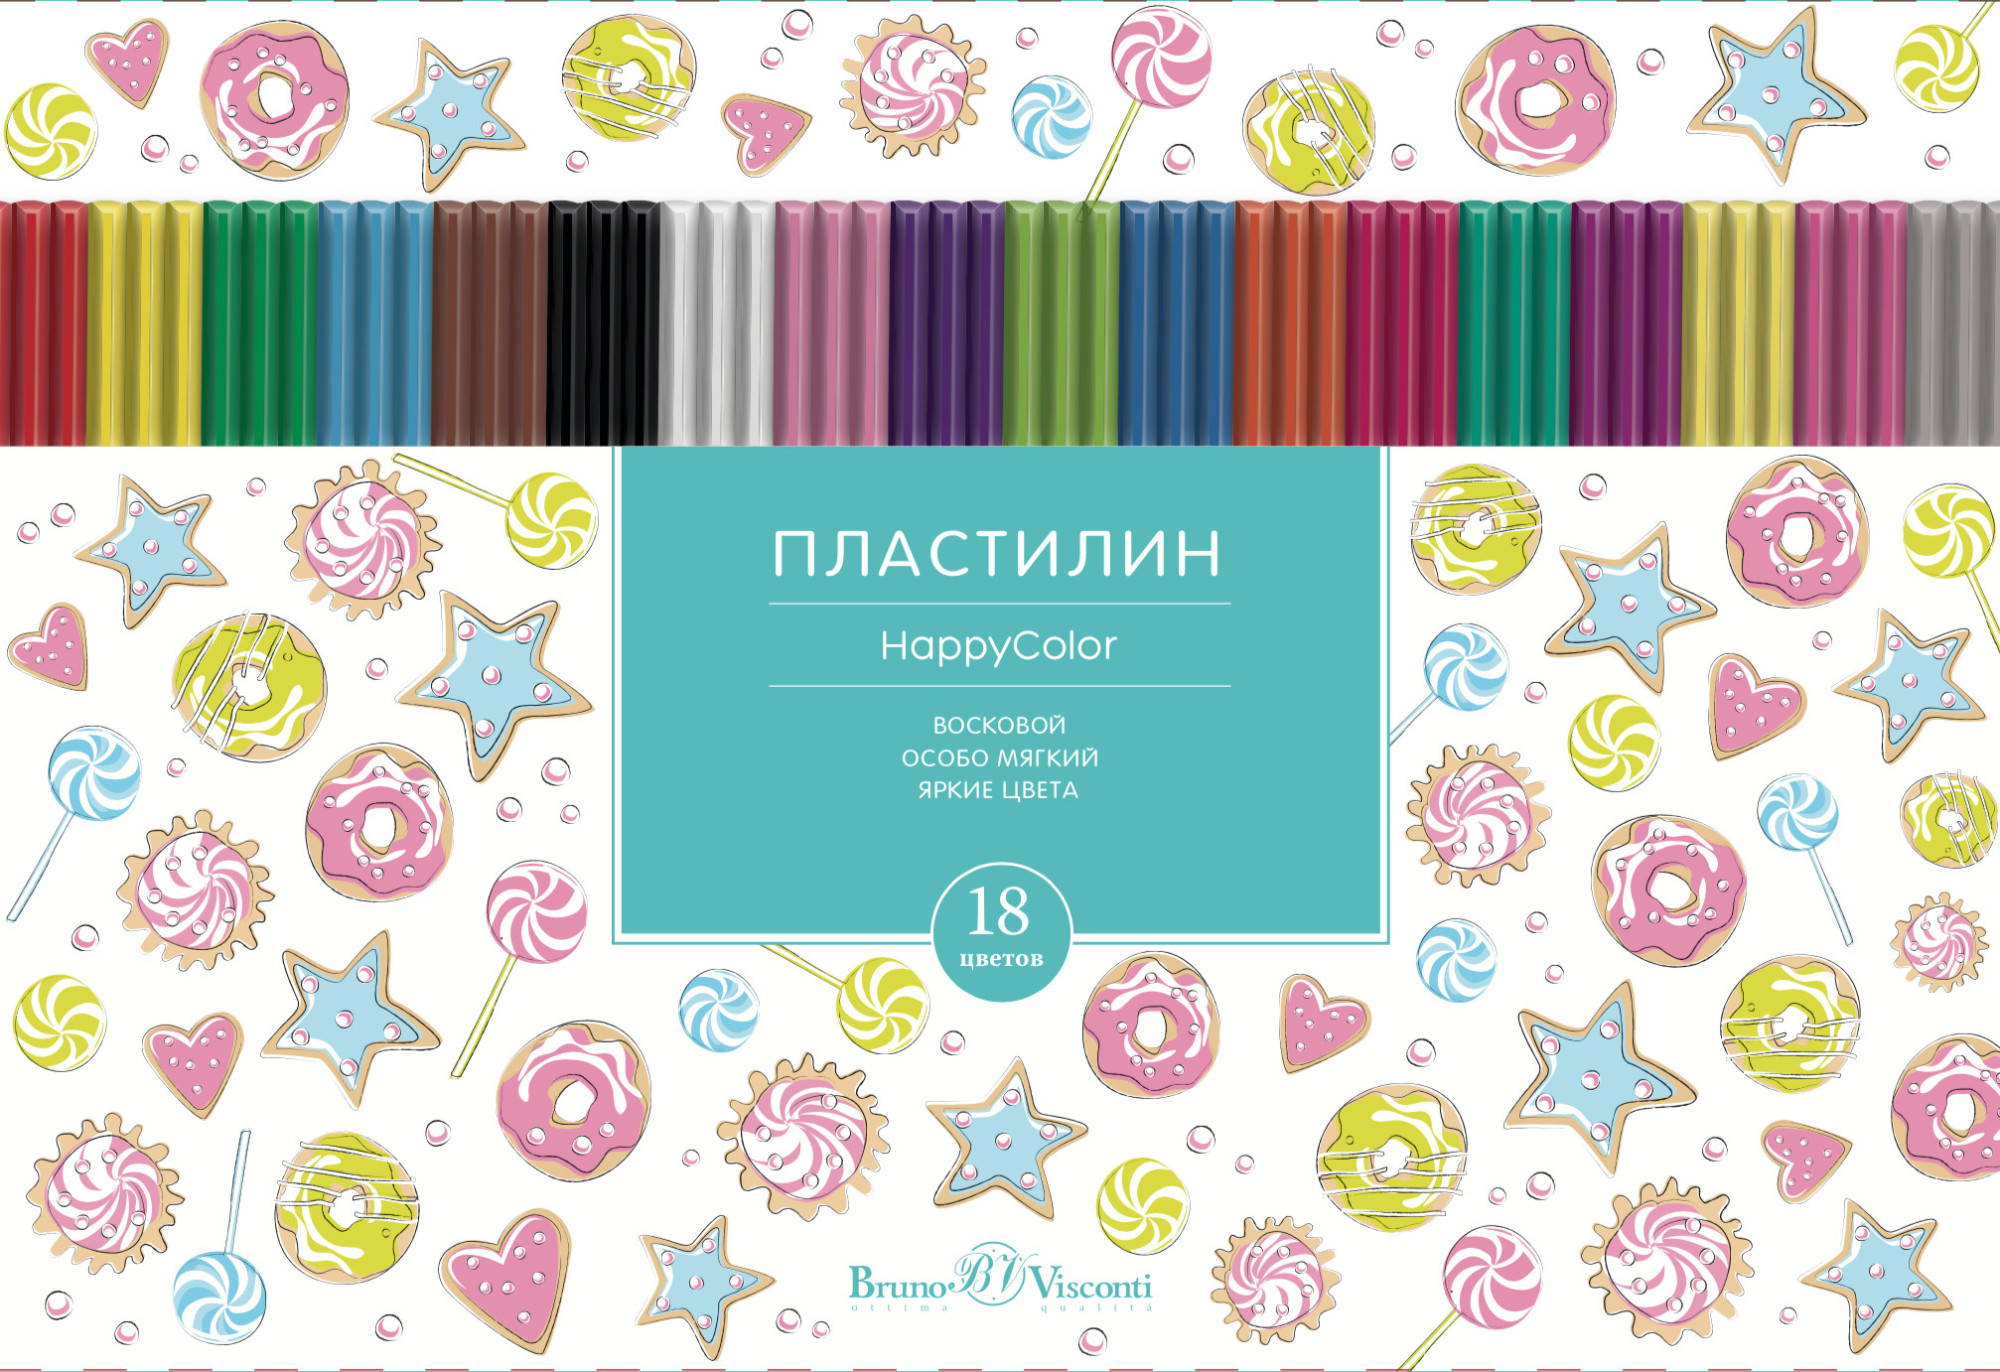 Пластилин восковой GSF Happycolor 18 цветов 34-0010/1